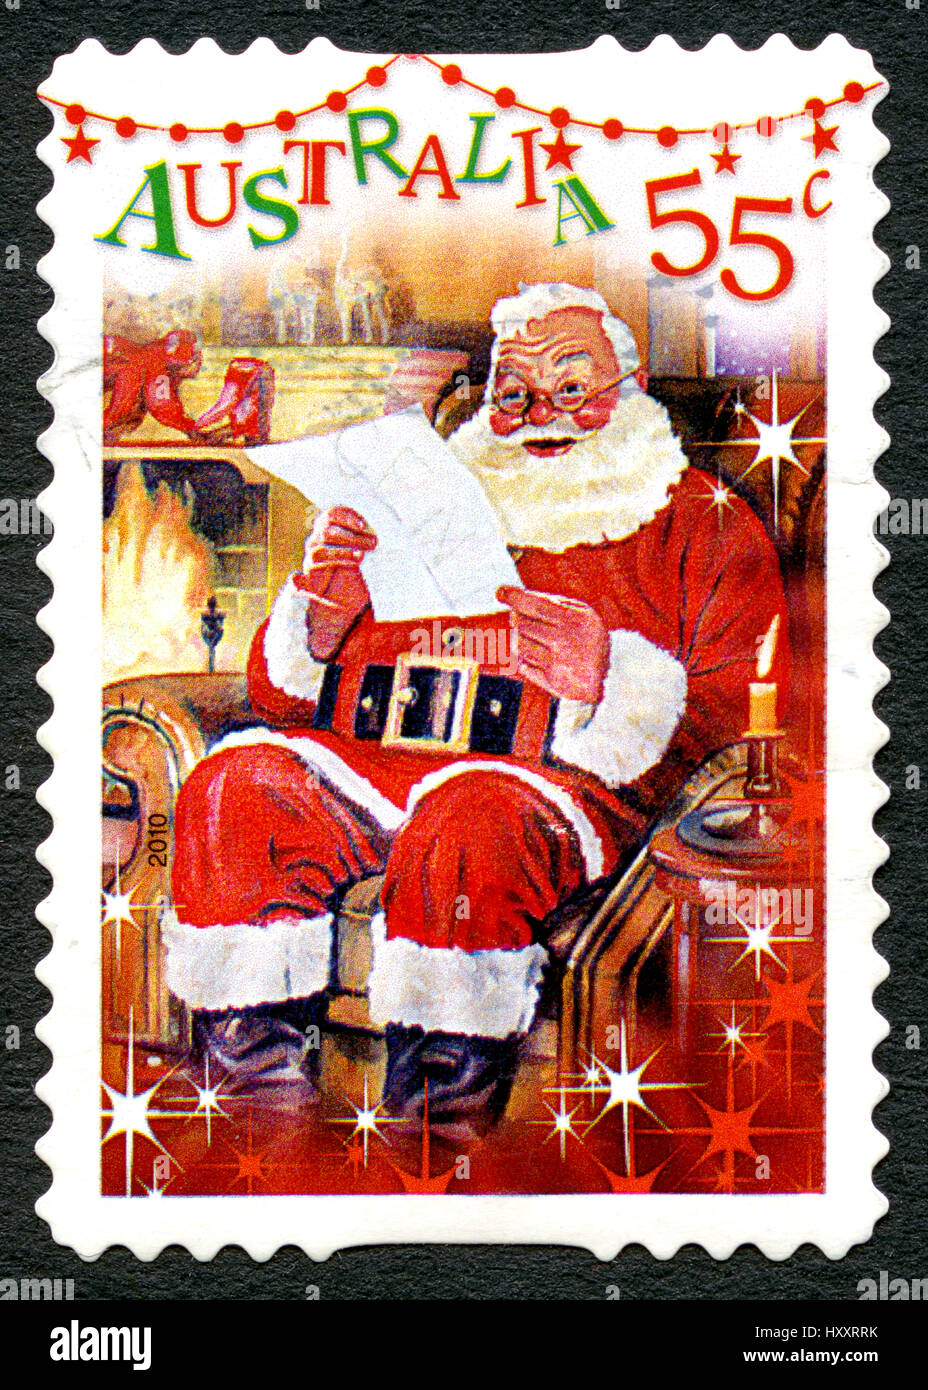 AUSTRALIA - circa 2010: utilizzate un francobollo da Australia, raffigurante una scena di festa di Santa Claus la lettura di una lettera da parte del camino, circa 2010. Foto Stock